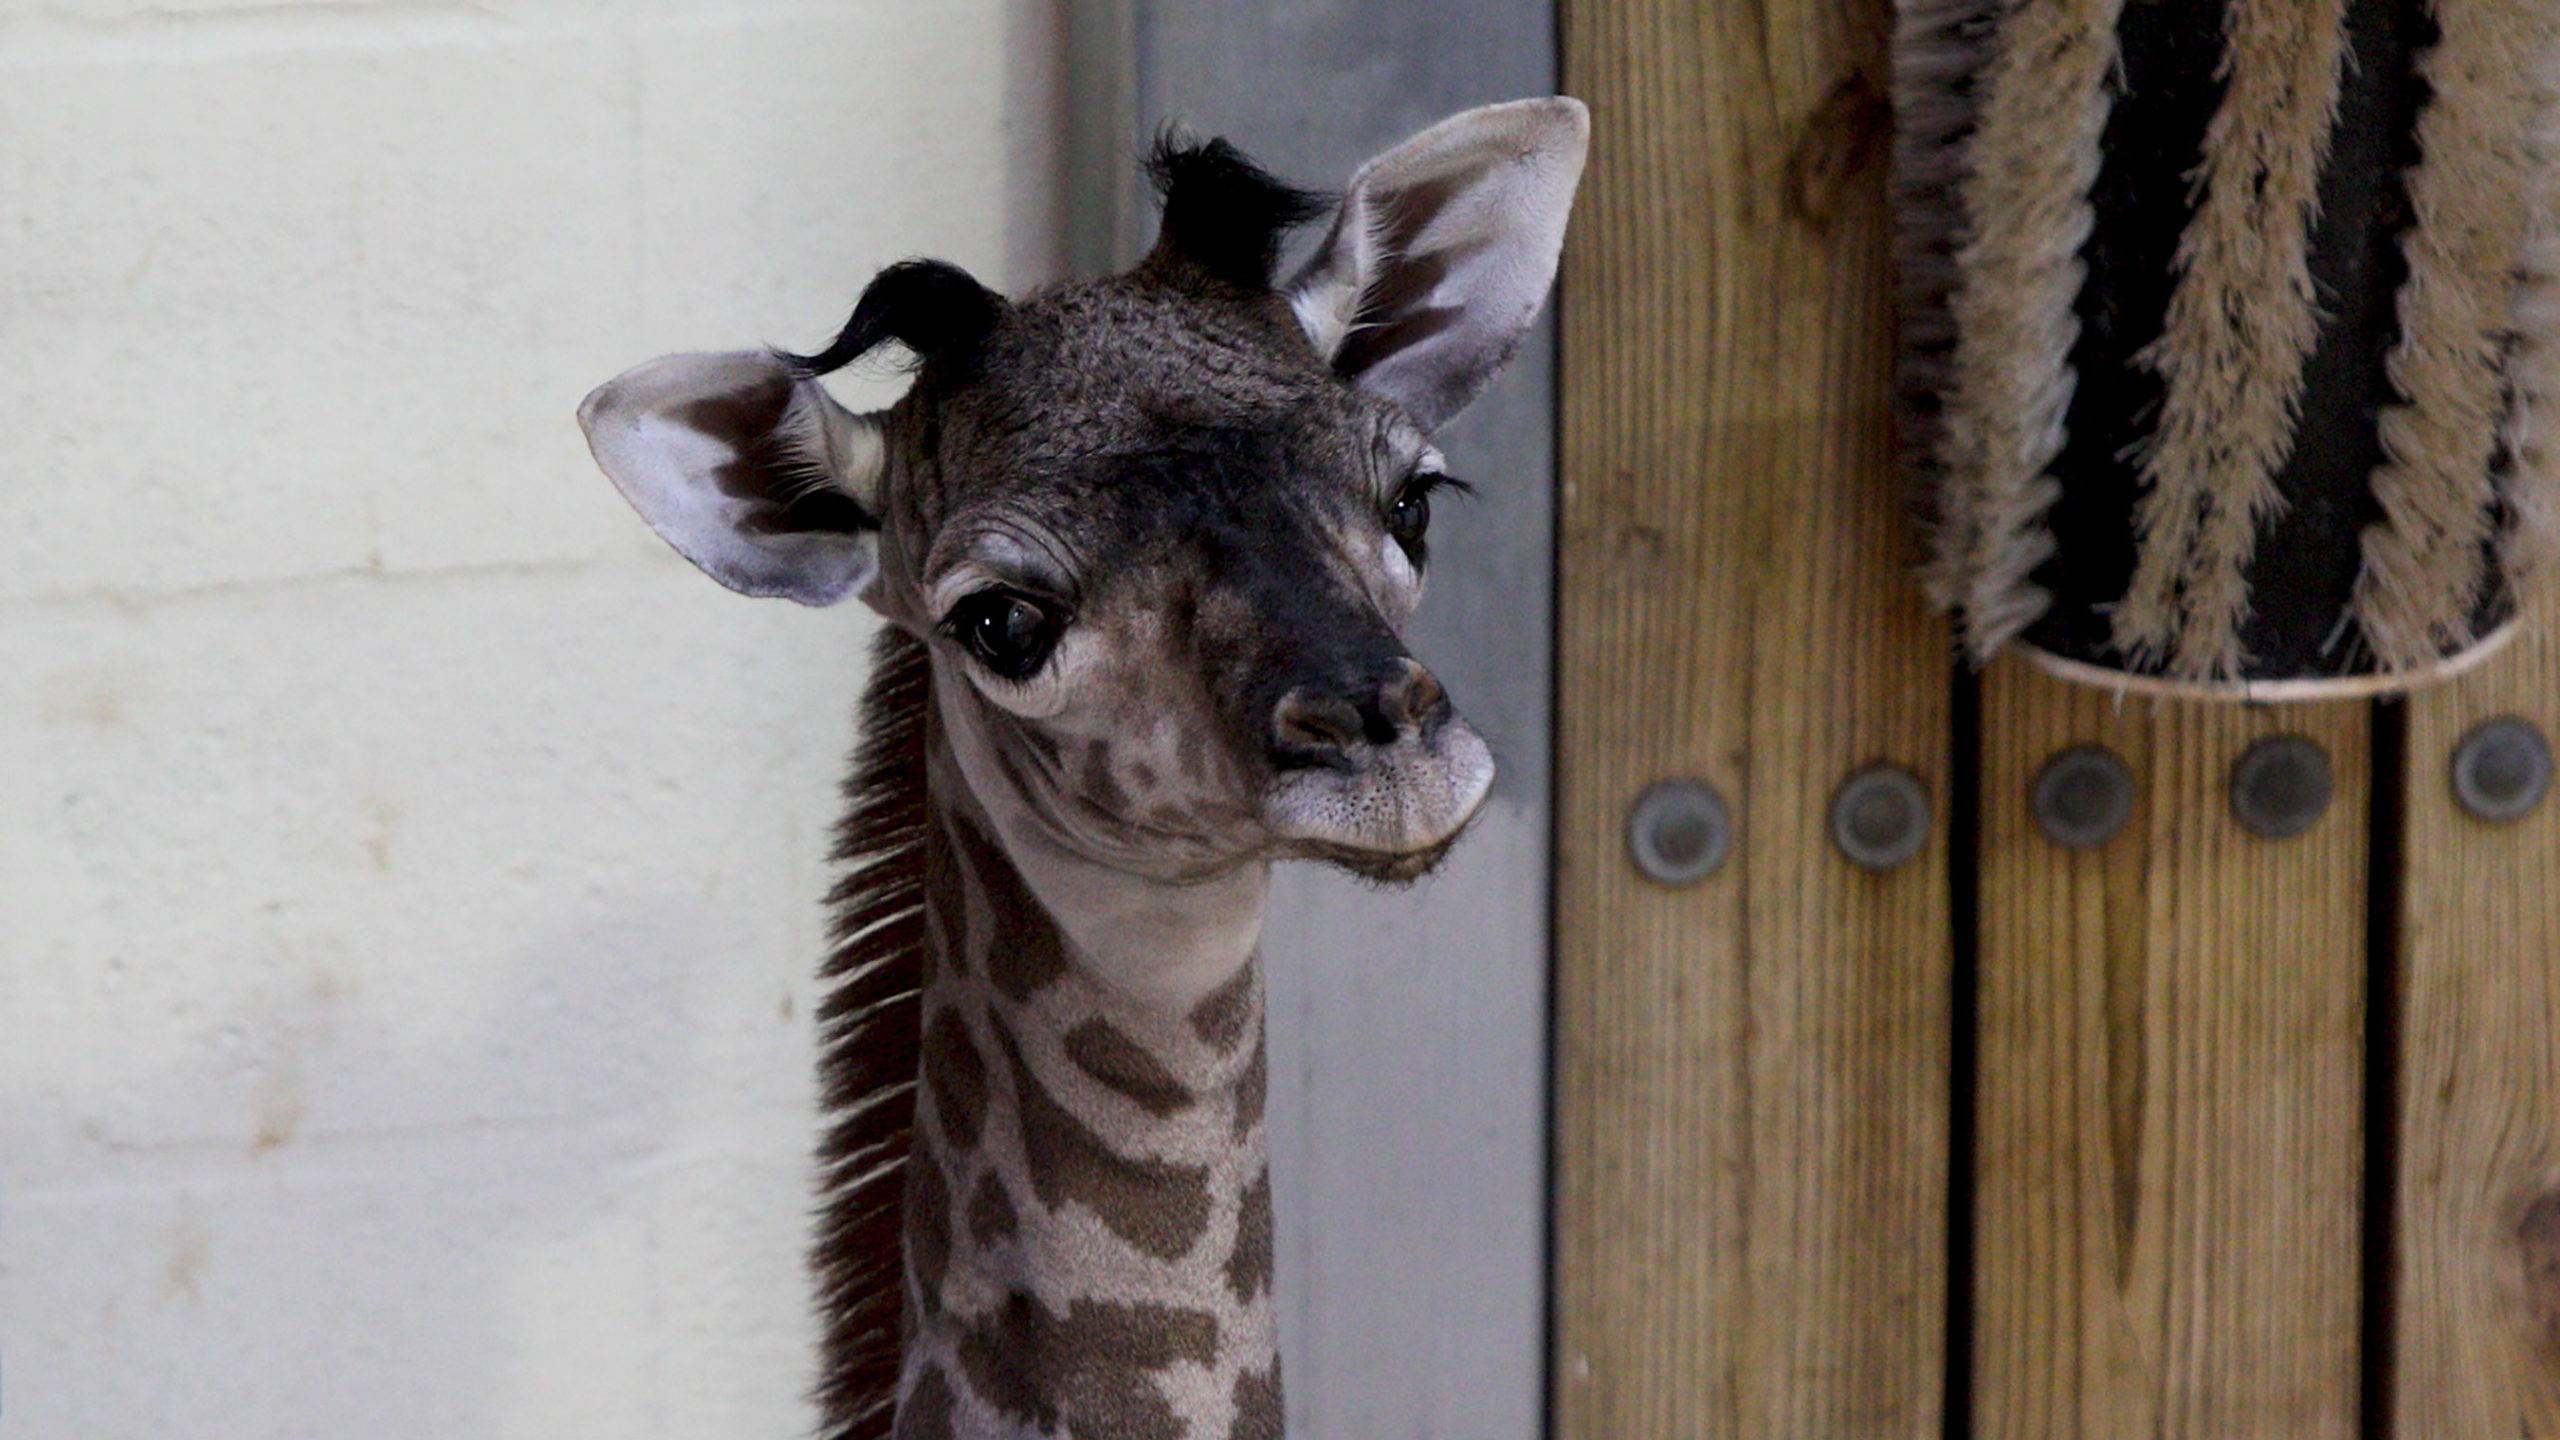 Masai giraffe born September 22 2020